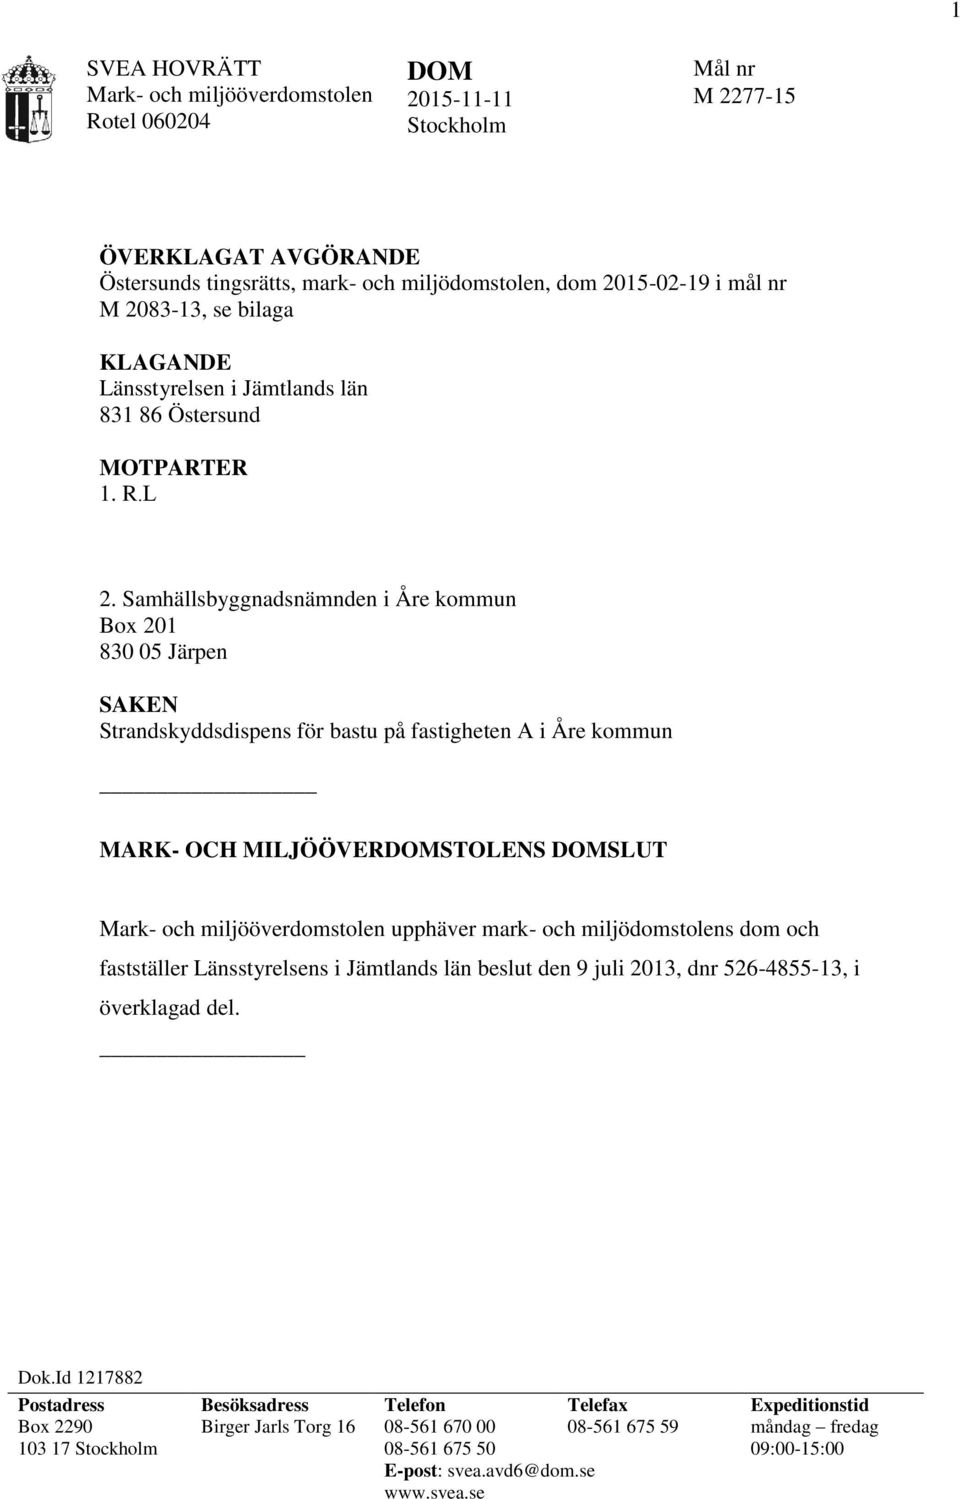 Samhällsbyggnadsnämnden i Åre kommun Box 201 830 05 Järpen SAKEN Strandskyddsdispens för bastu på fastigheten A i Åre kommun MARK- OCH MILJÖÖVERSTOLENS SLUT Mark- och miljööverdomstolen upphäver